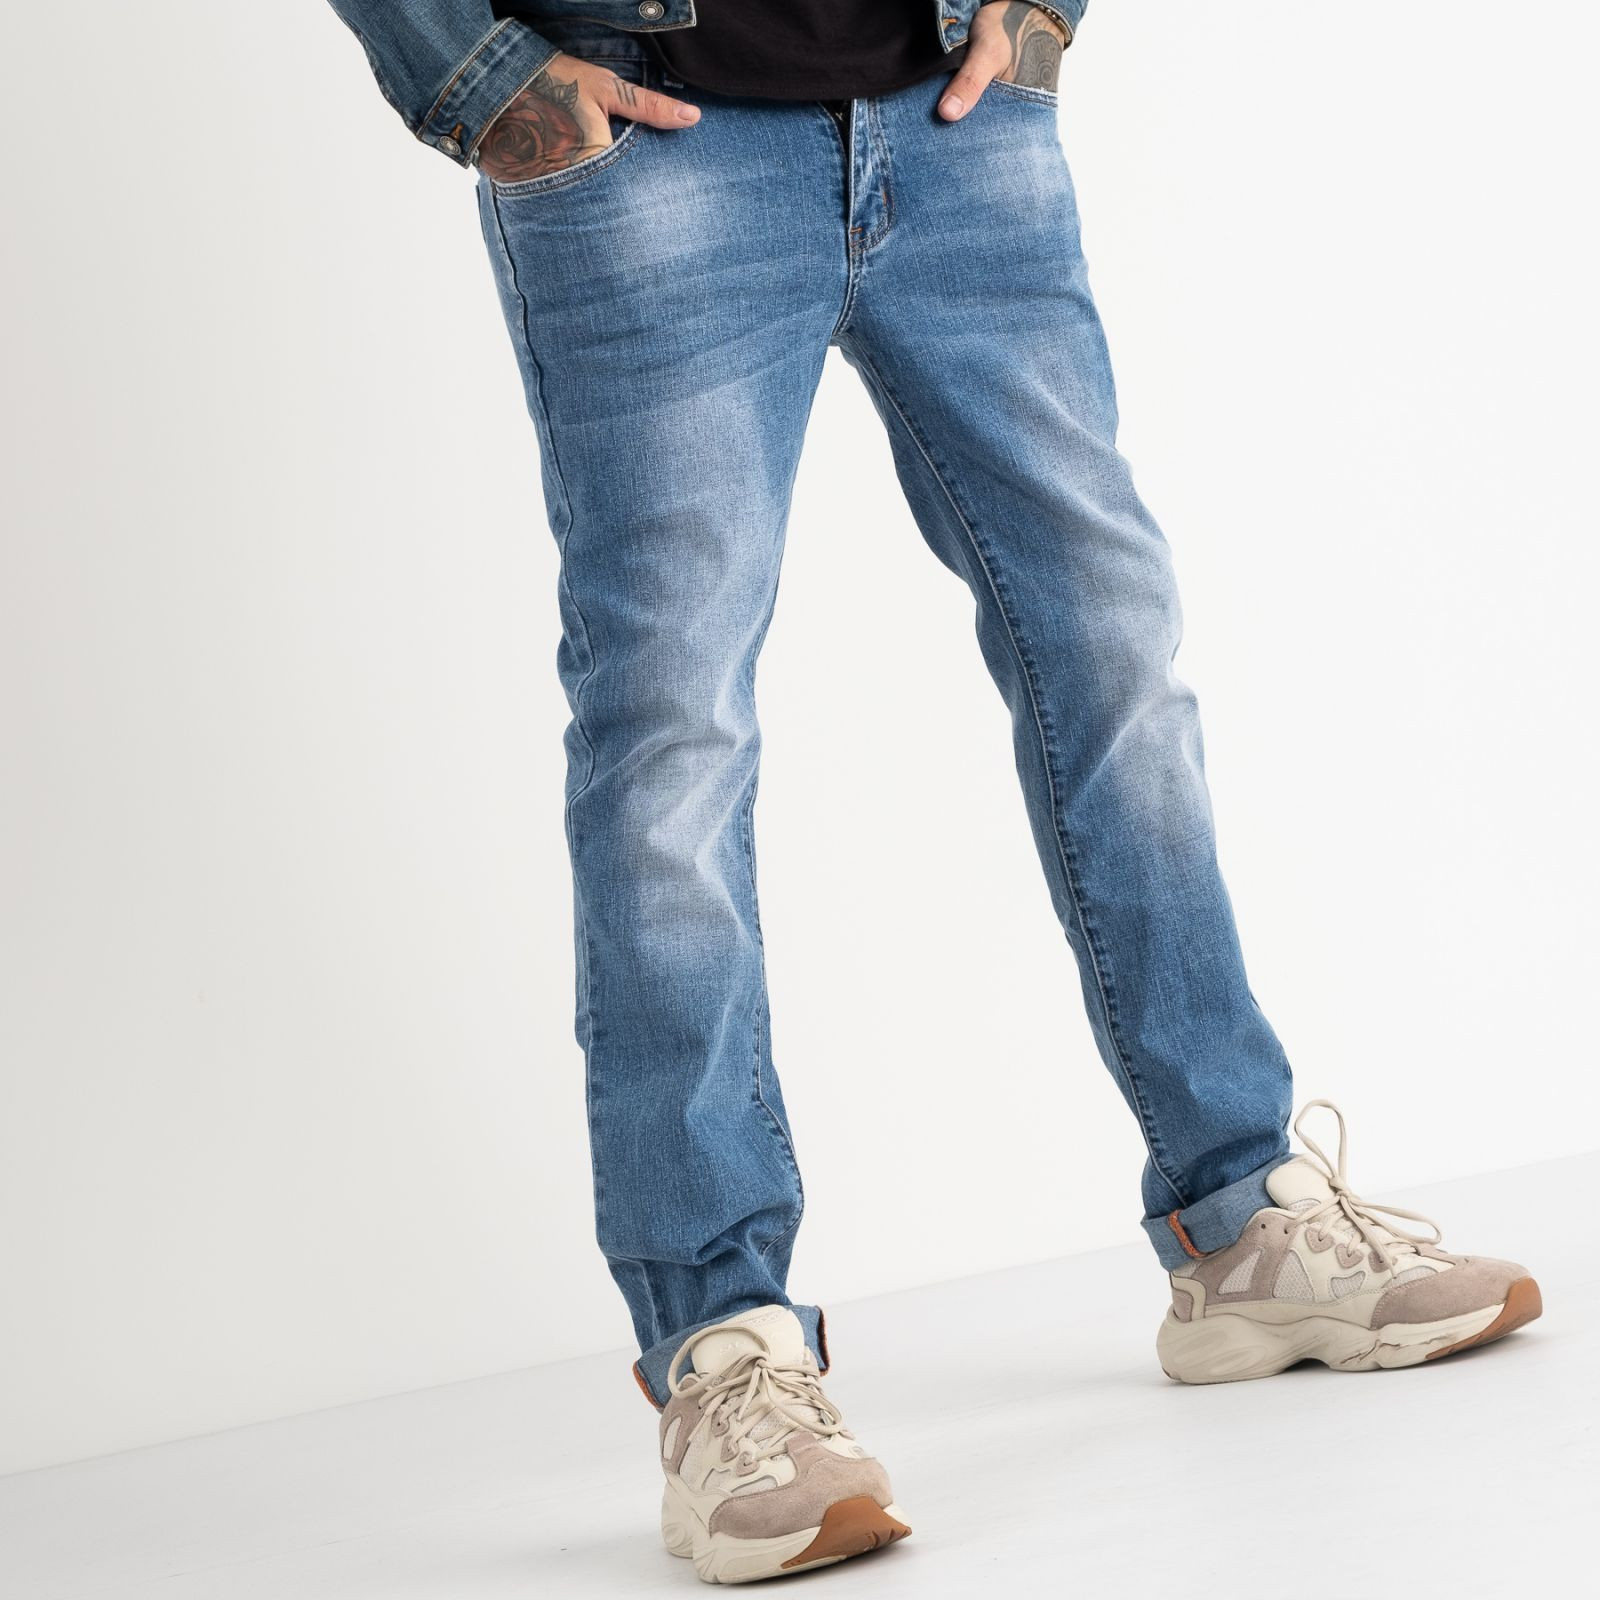 2065 Fang джинсы голубые стрейчевые (8 ед. размеры: 30.31.32.33.34.35.36.38)